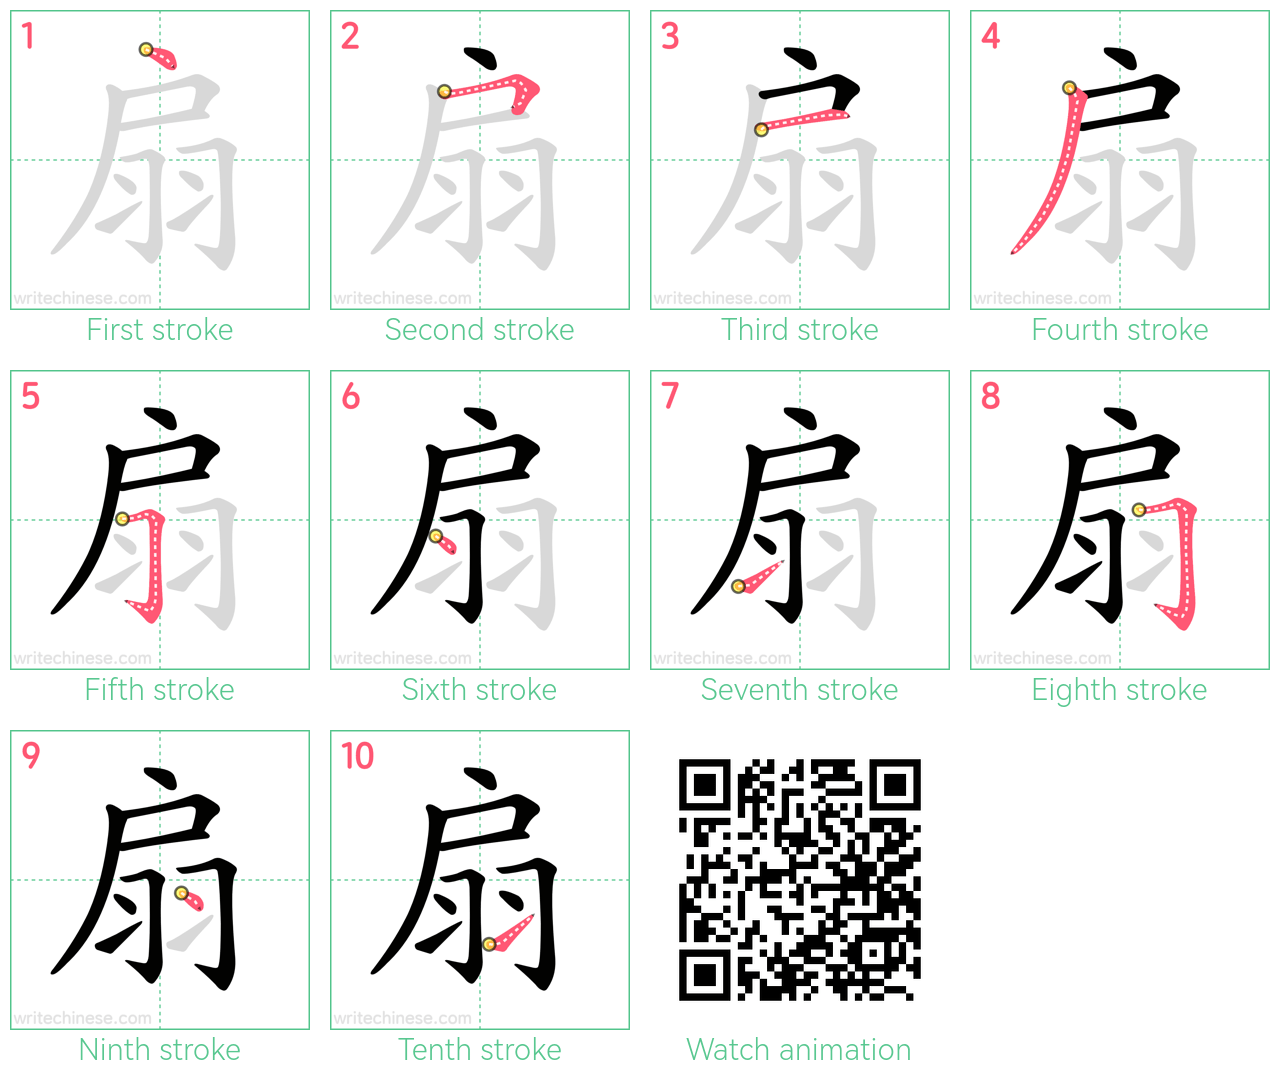 扇 step-by-step stroke order diagrams